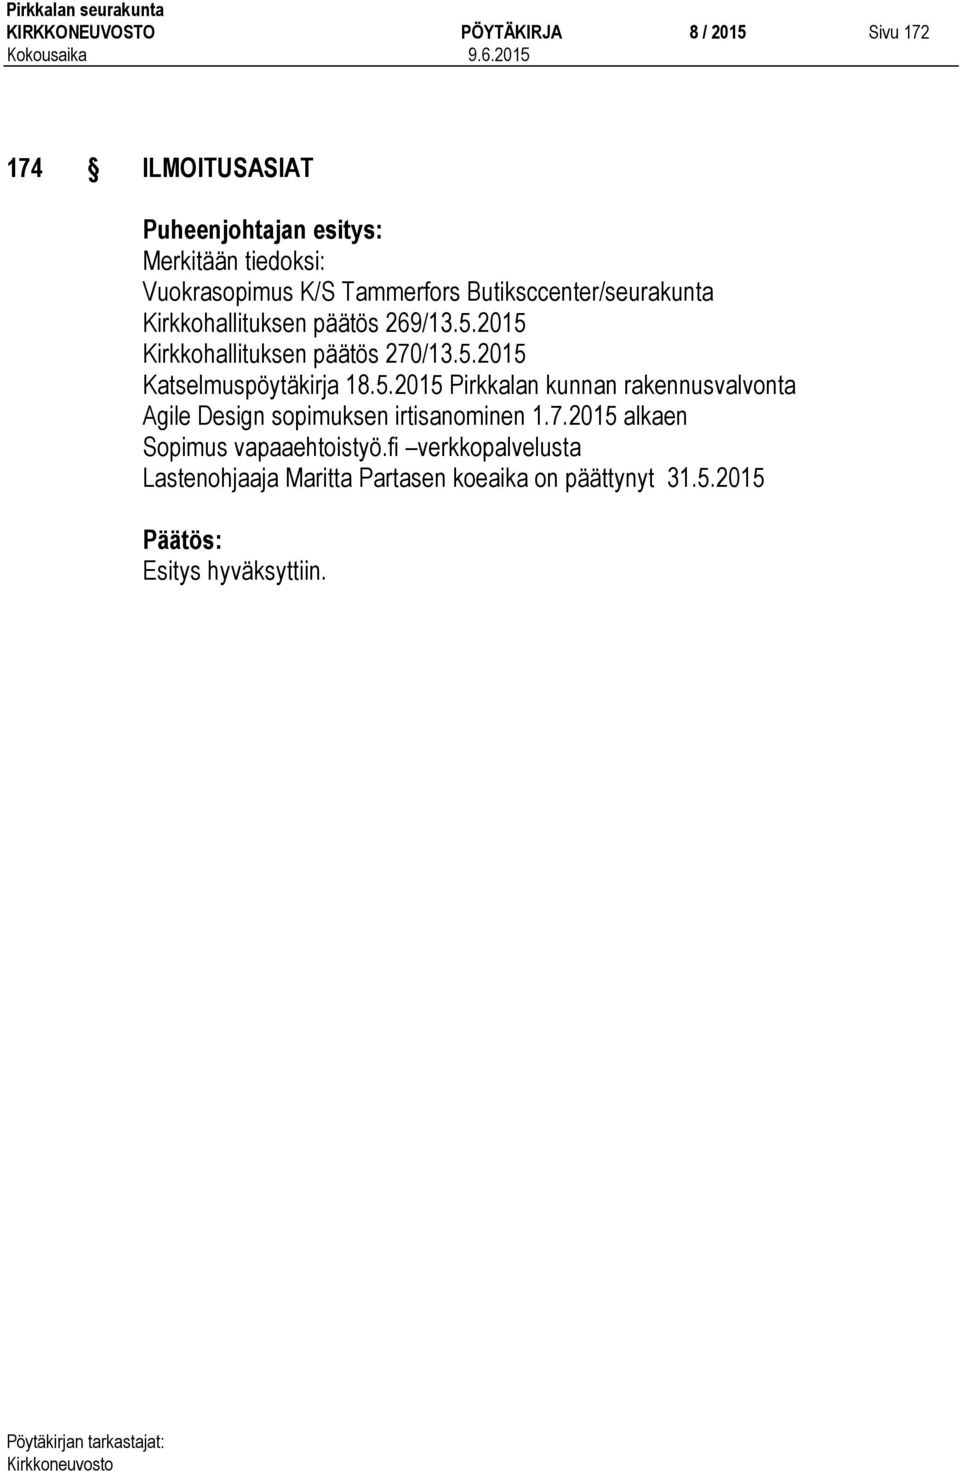 5.2015 Pirkkalan kunnan rakennusvalvonta Agile Design sopimuksen irtisanominen 1.7.